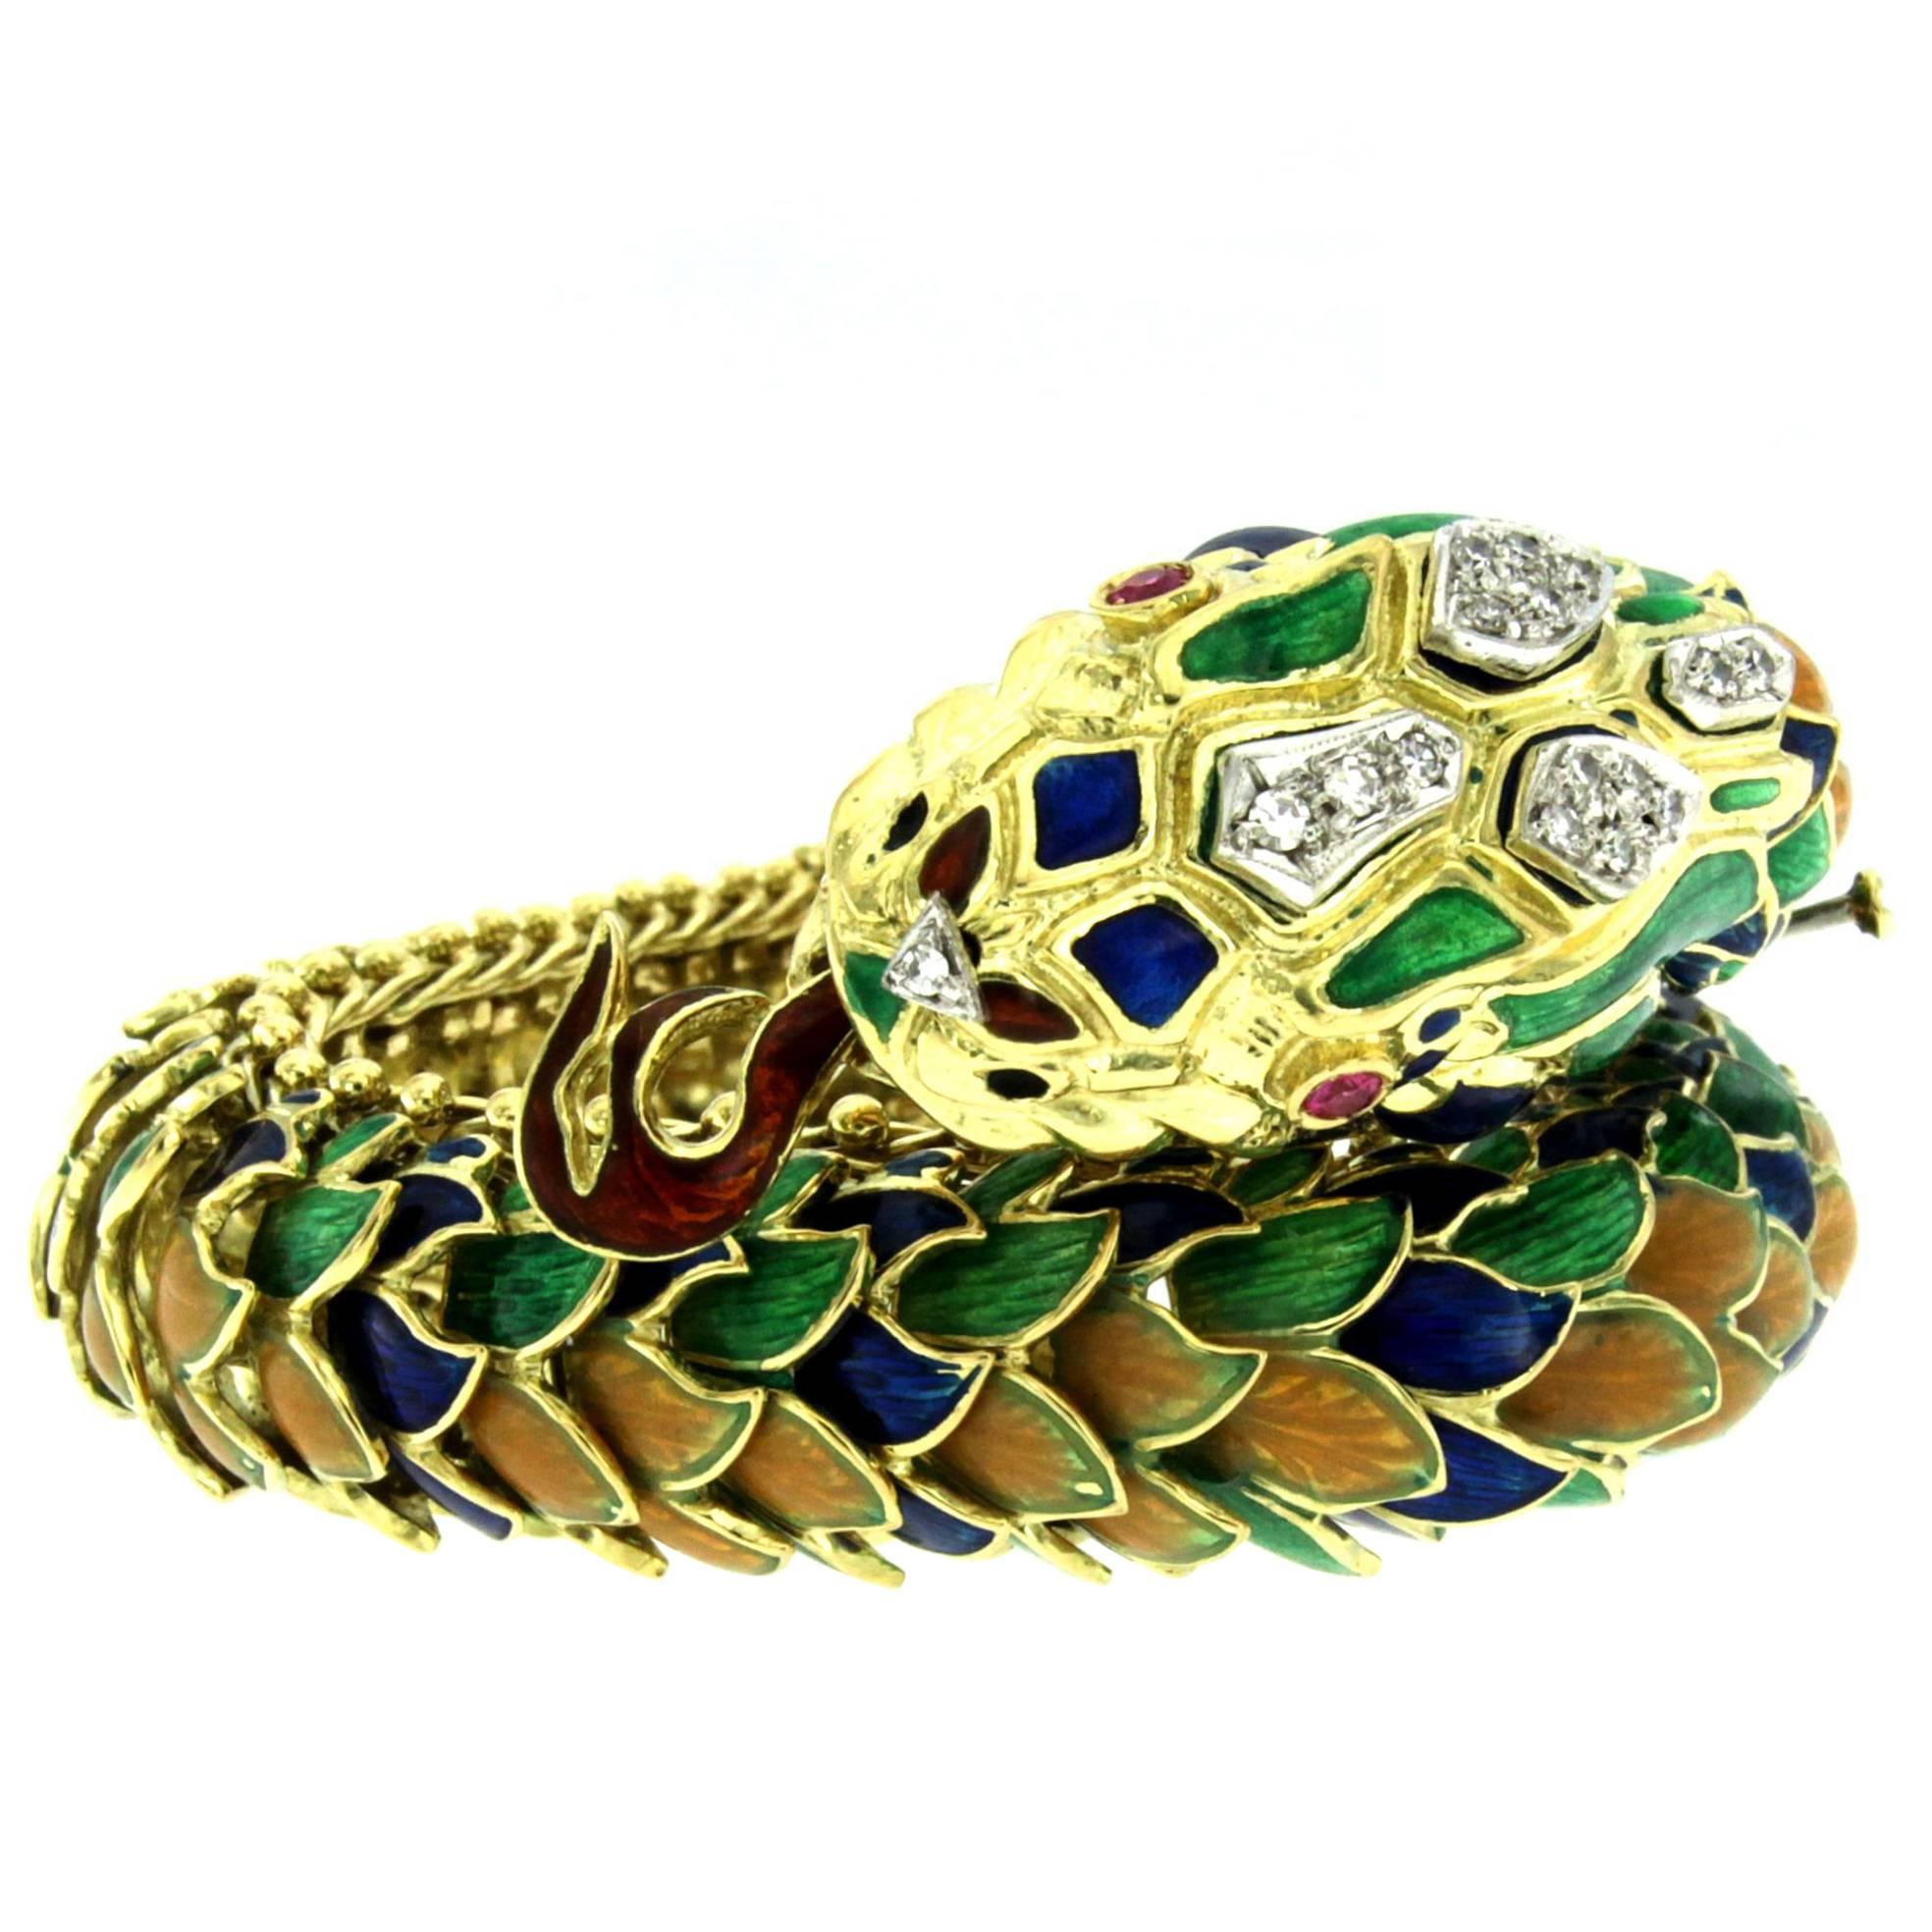 1960s Italian Serpentine Diamond Ruby Enamel Gold Bracelet